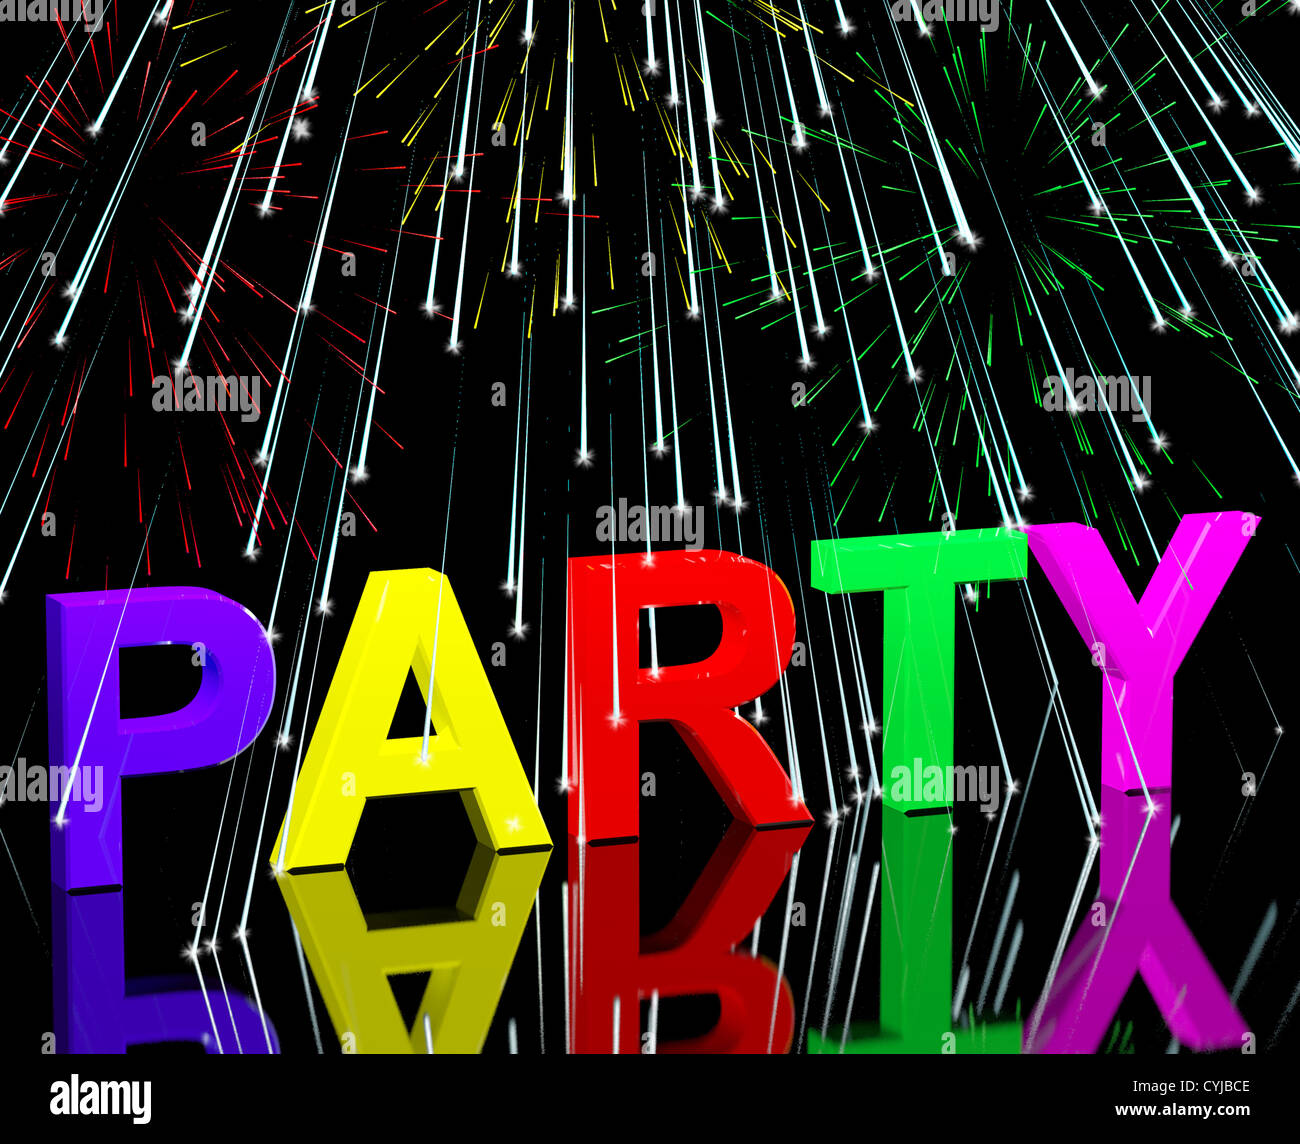 Party Wort mit Feuerwerk zeigt Clubbing Nachtleben oder Discos Stockfoto